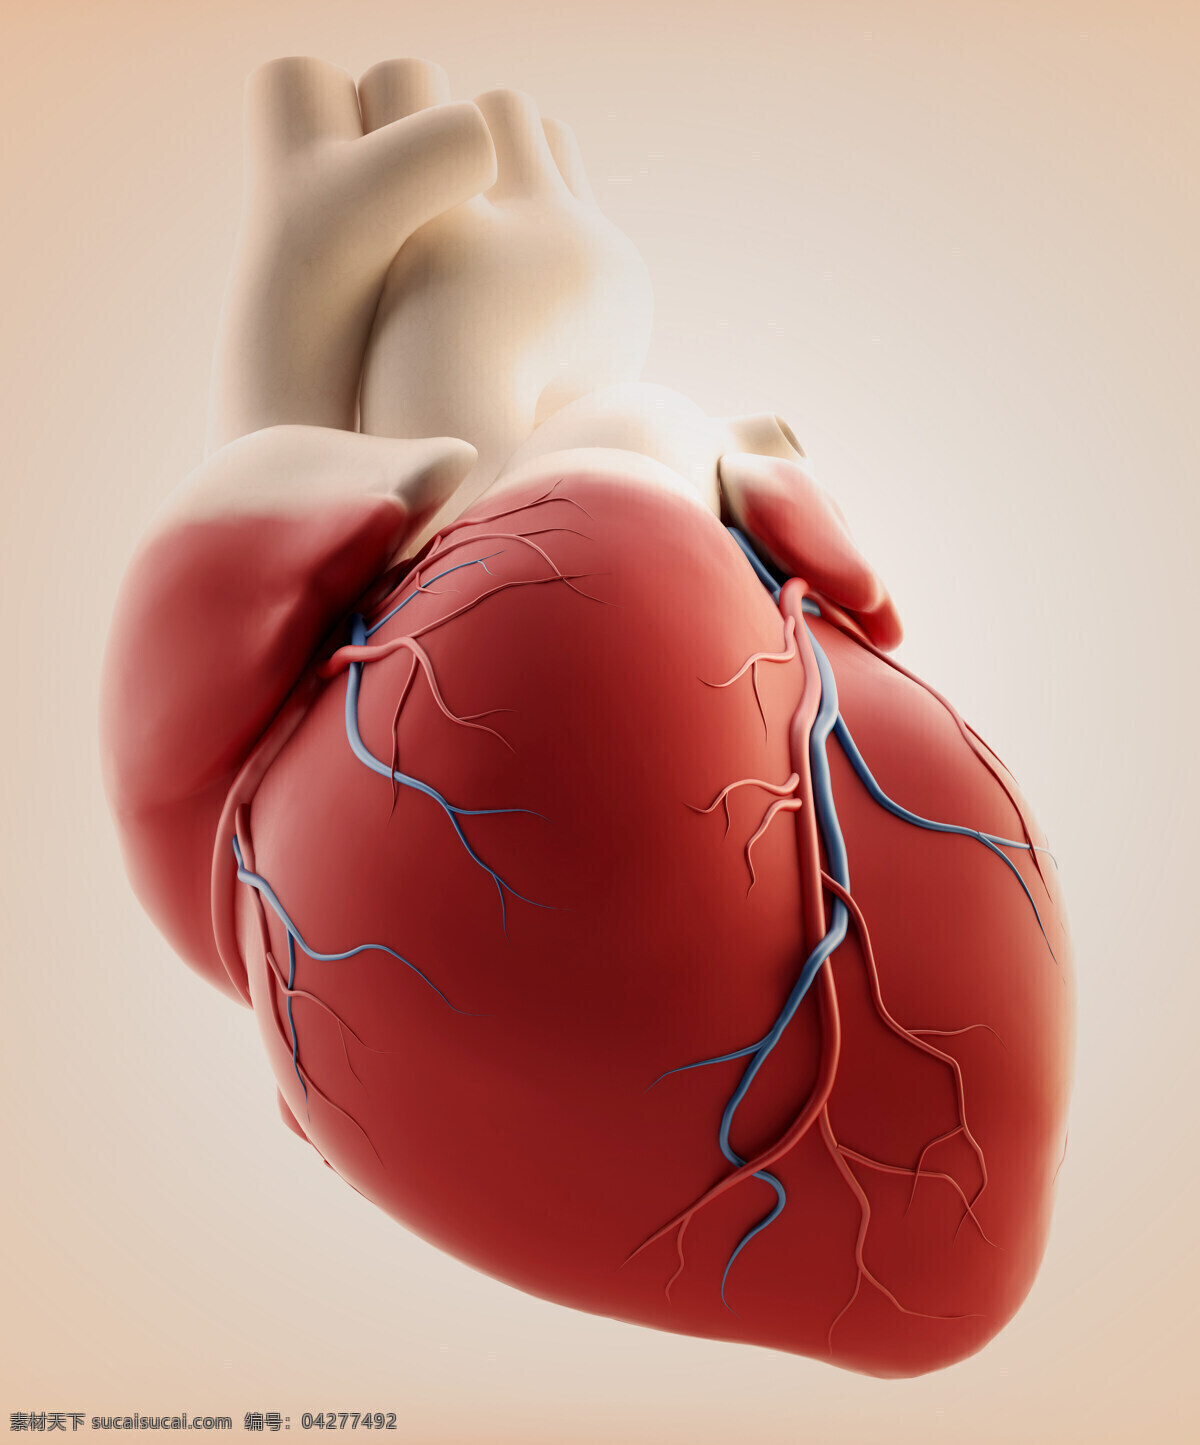 心脏 模型 内脏 人体器官 人体心脏 人体器官图 人物图片